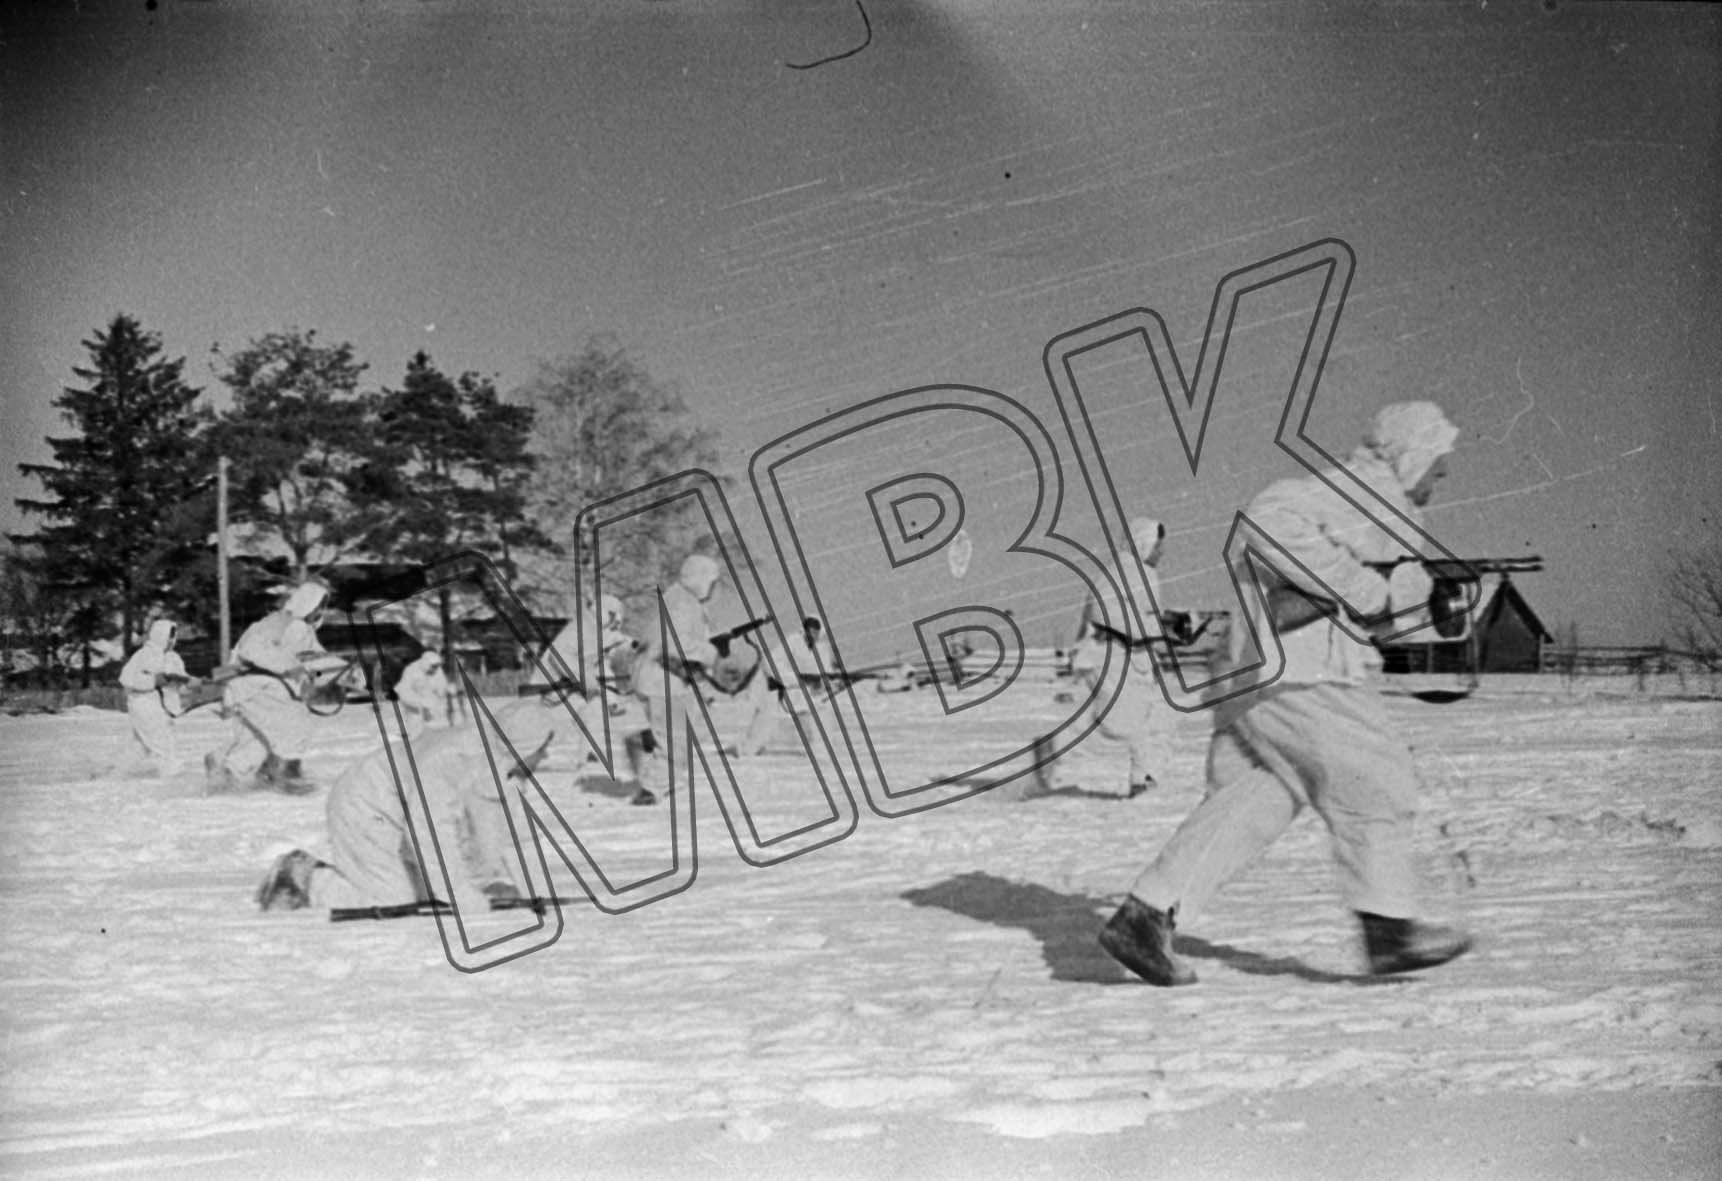 Fotografie: Angriff sowjetischer Infanteristen, Moskauer Gebiet, Dezember 1941 (Museum Berlin-Karlshorst RR-P)